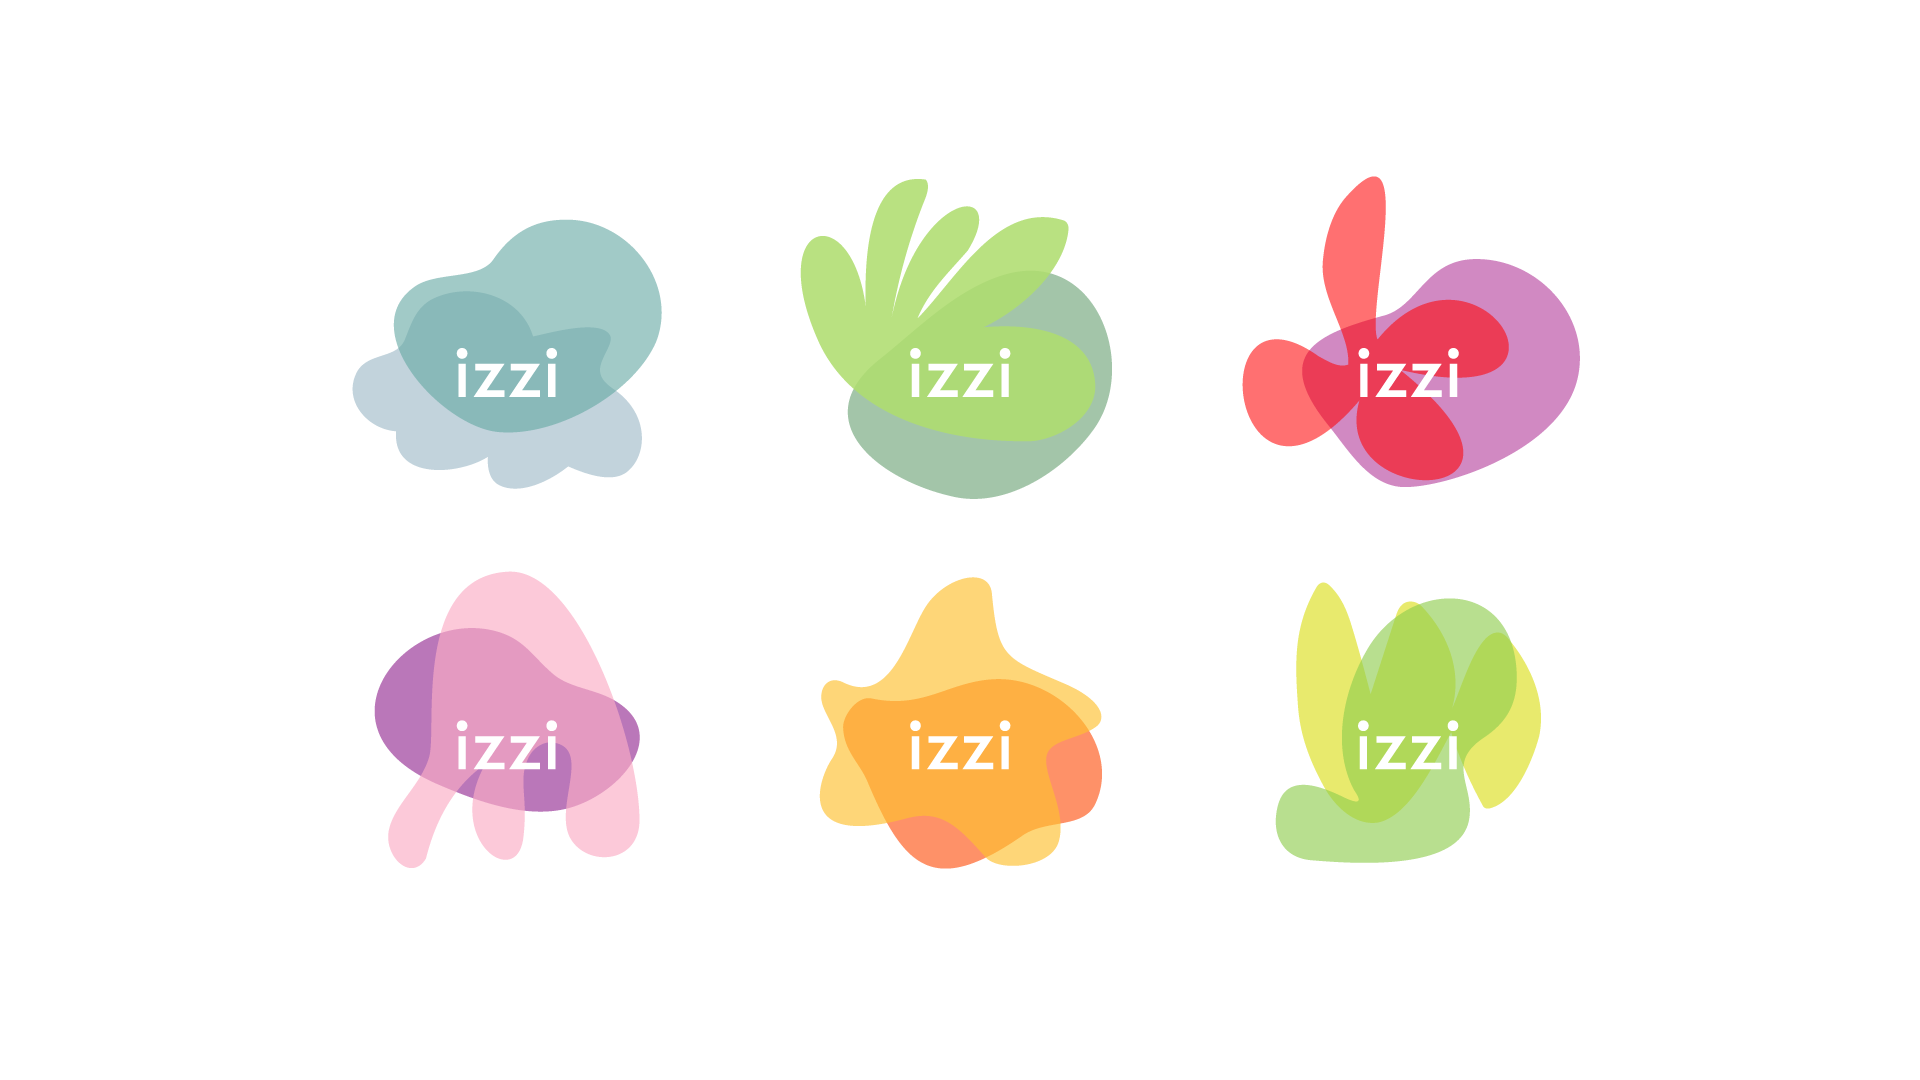 Izzi logo variations